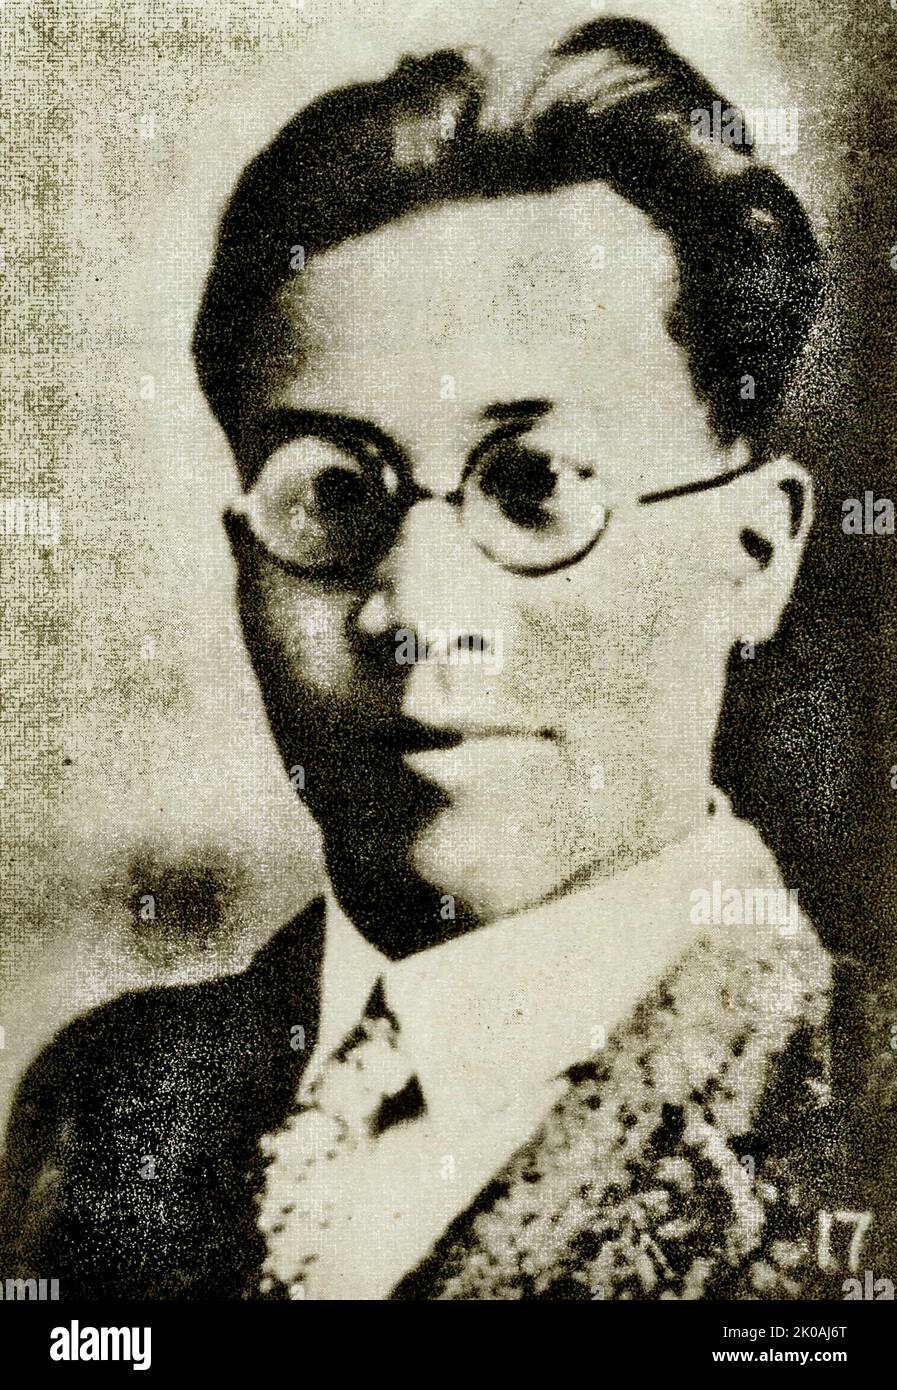 Yu Xiusong (1899-1939), membro del Partito Comunista Cinese (CCP) Shanghai Iniziation Group, fu uno dei primi membri del partito del CCP. Era il primo segretario della Lega Socialista Cinese della Gioventù, il segretario generale della Federazione Anti-Imperiale Xinjiang e il presidente del Collegio Xinjiang. Foto Stock